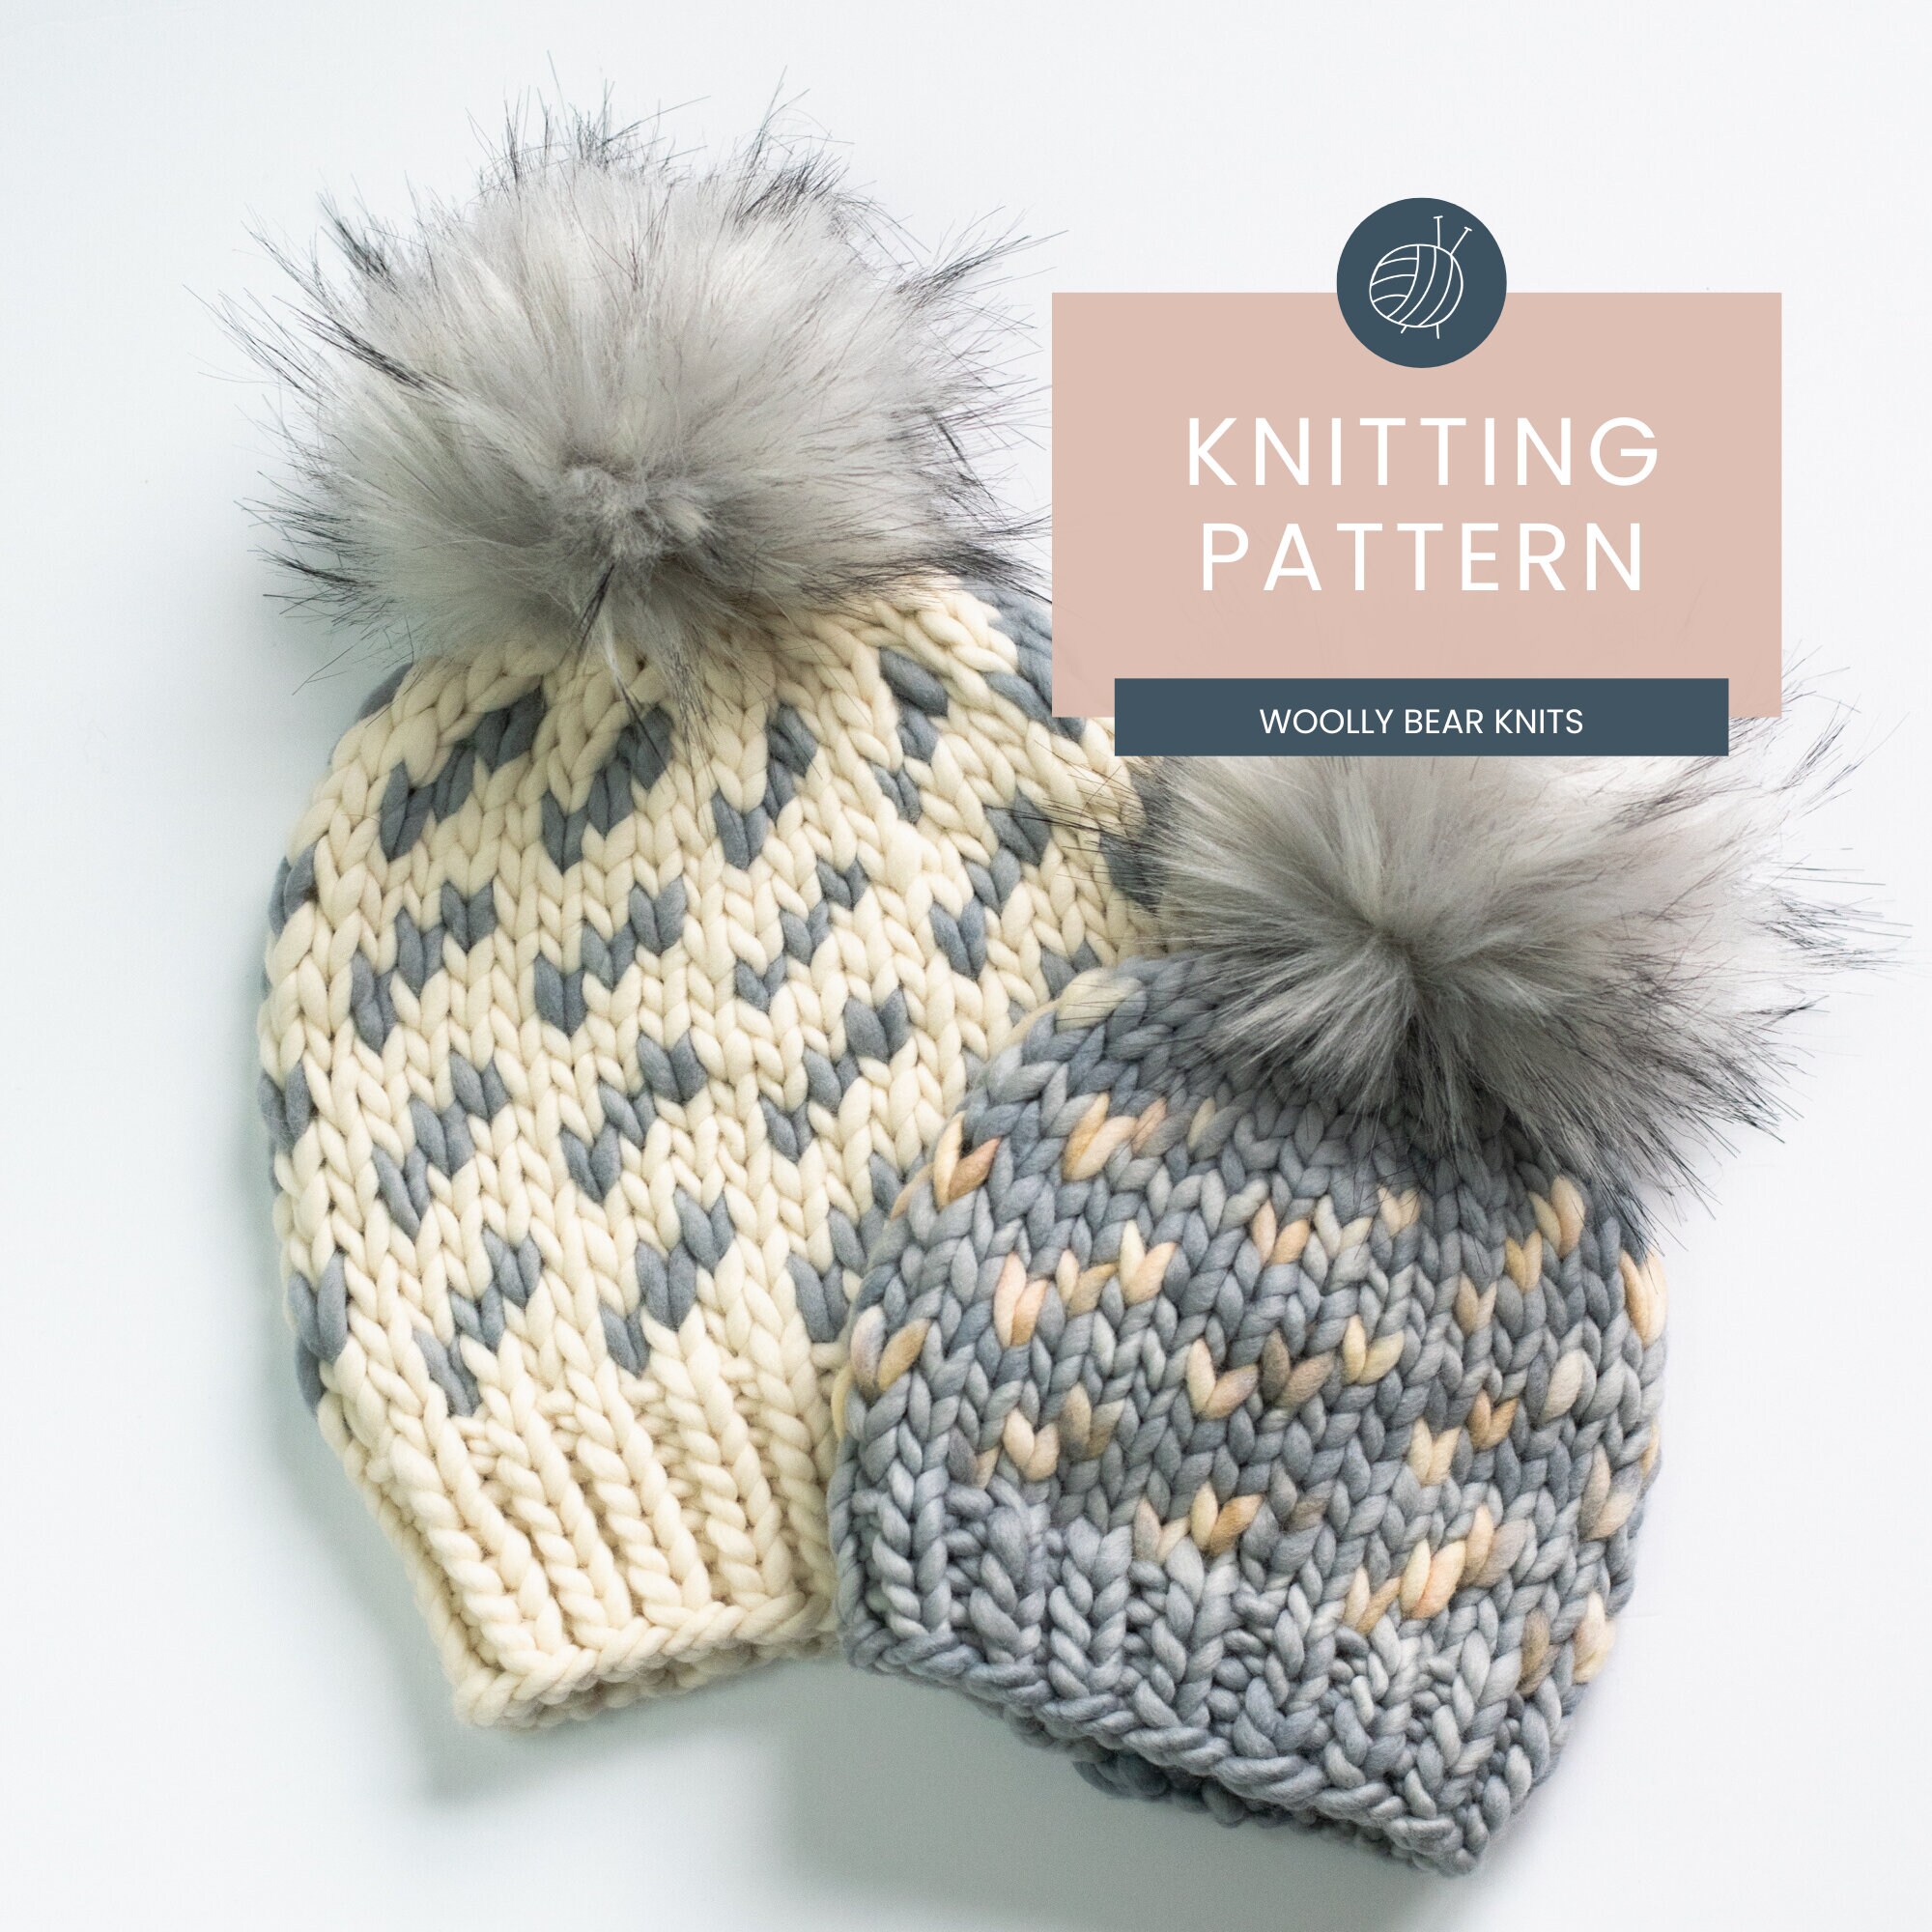 Pom-Pom Knitting Patterns - The Knit Picks Staff Knitting Blog